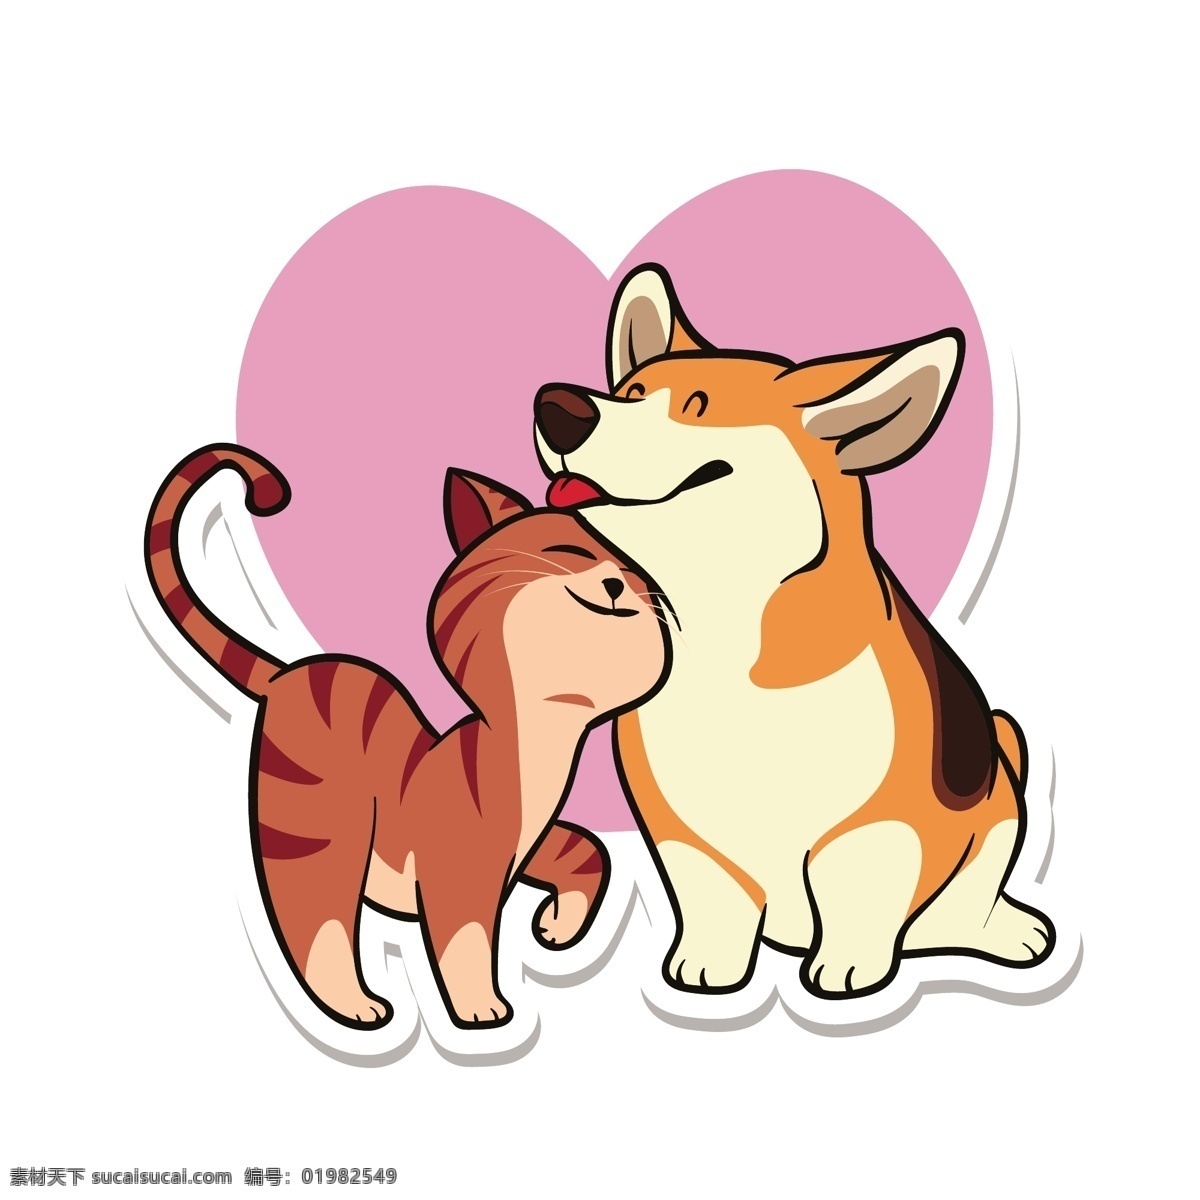 猫咪和柯基犬 可爱 猫 柯基 贴纸 狗 爱心 条纹 矢量图 矢量人物 矢量场景 动漫动画